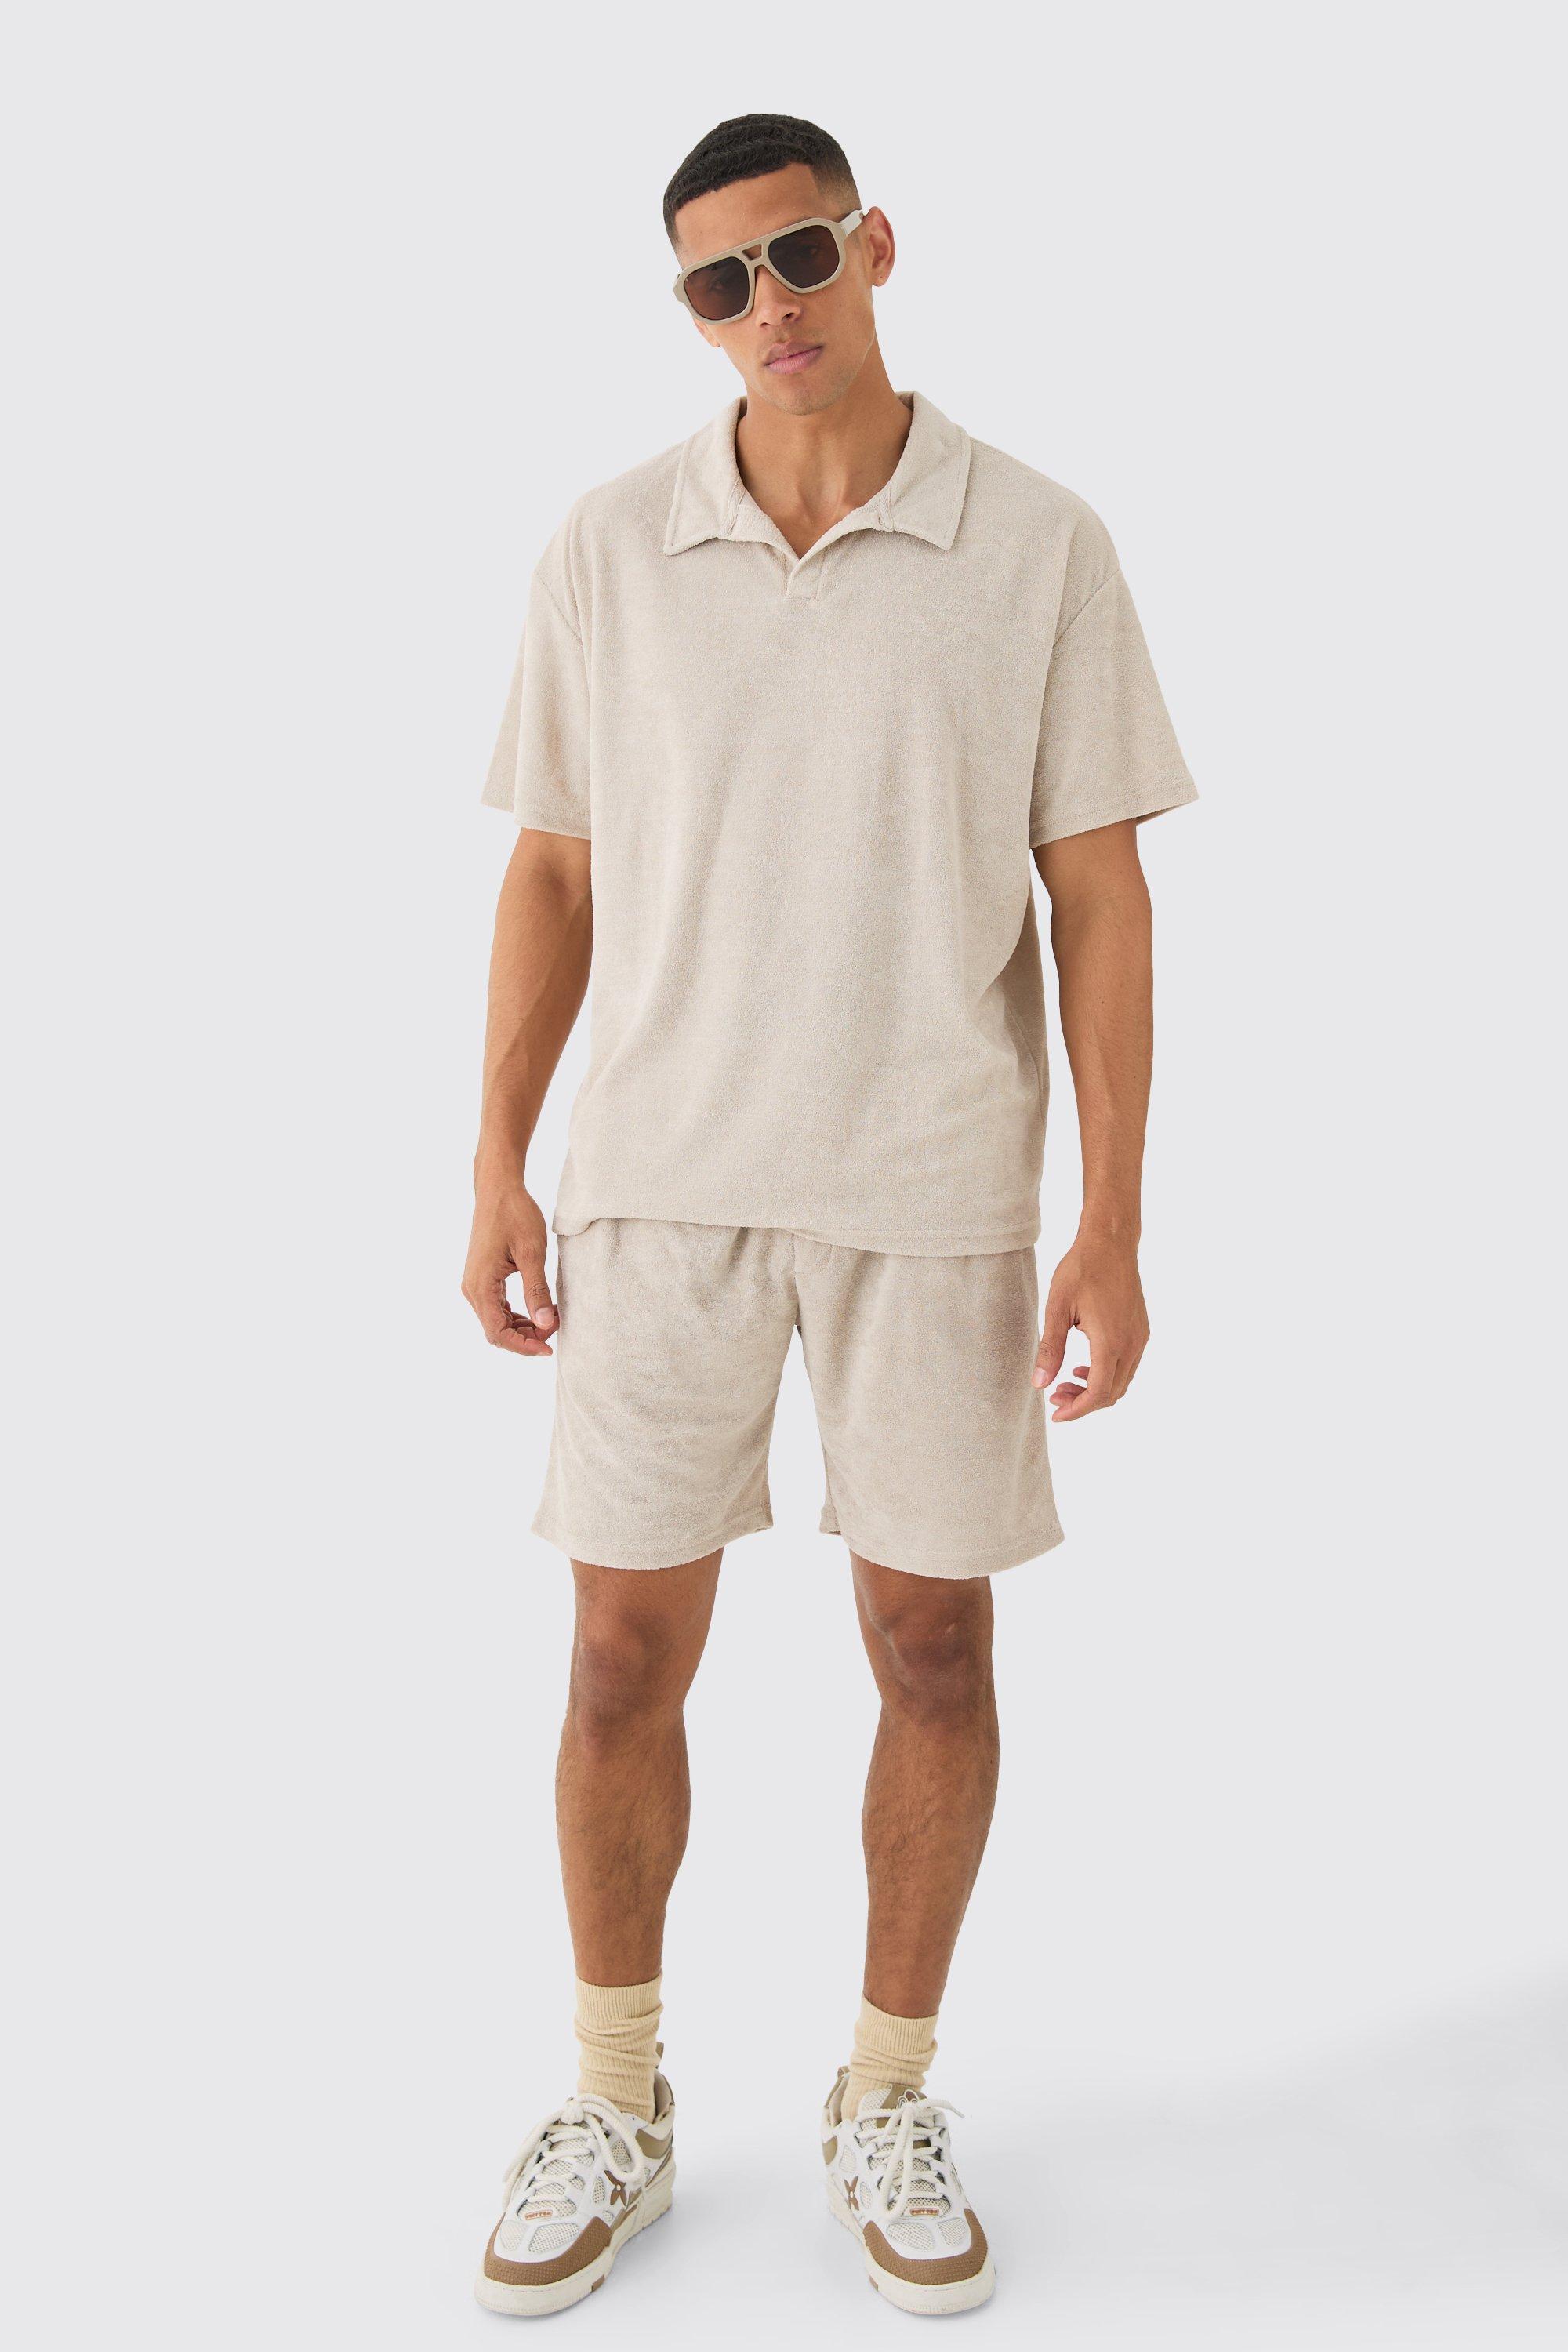 Image of Oversized Revere Towelling Polo & Shorts Set, Beige